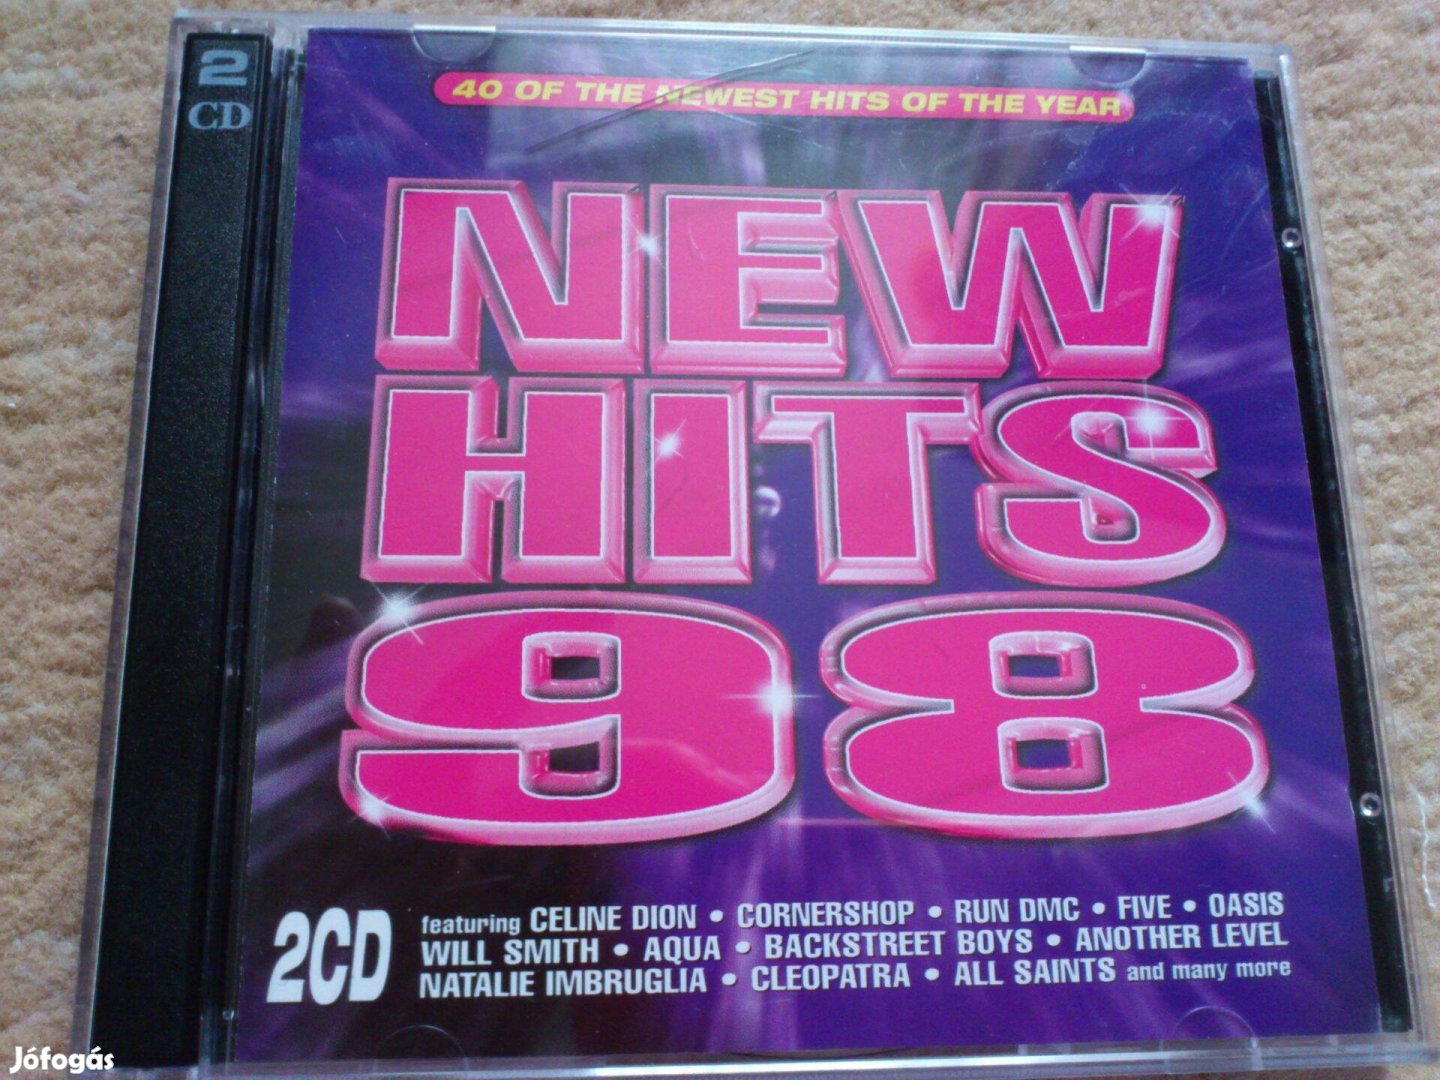 New hits 98 2 cd(Celine Dion,Spice Girls,Destinys Child) 98-as zenék